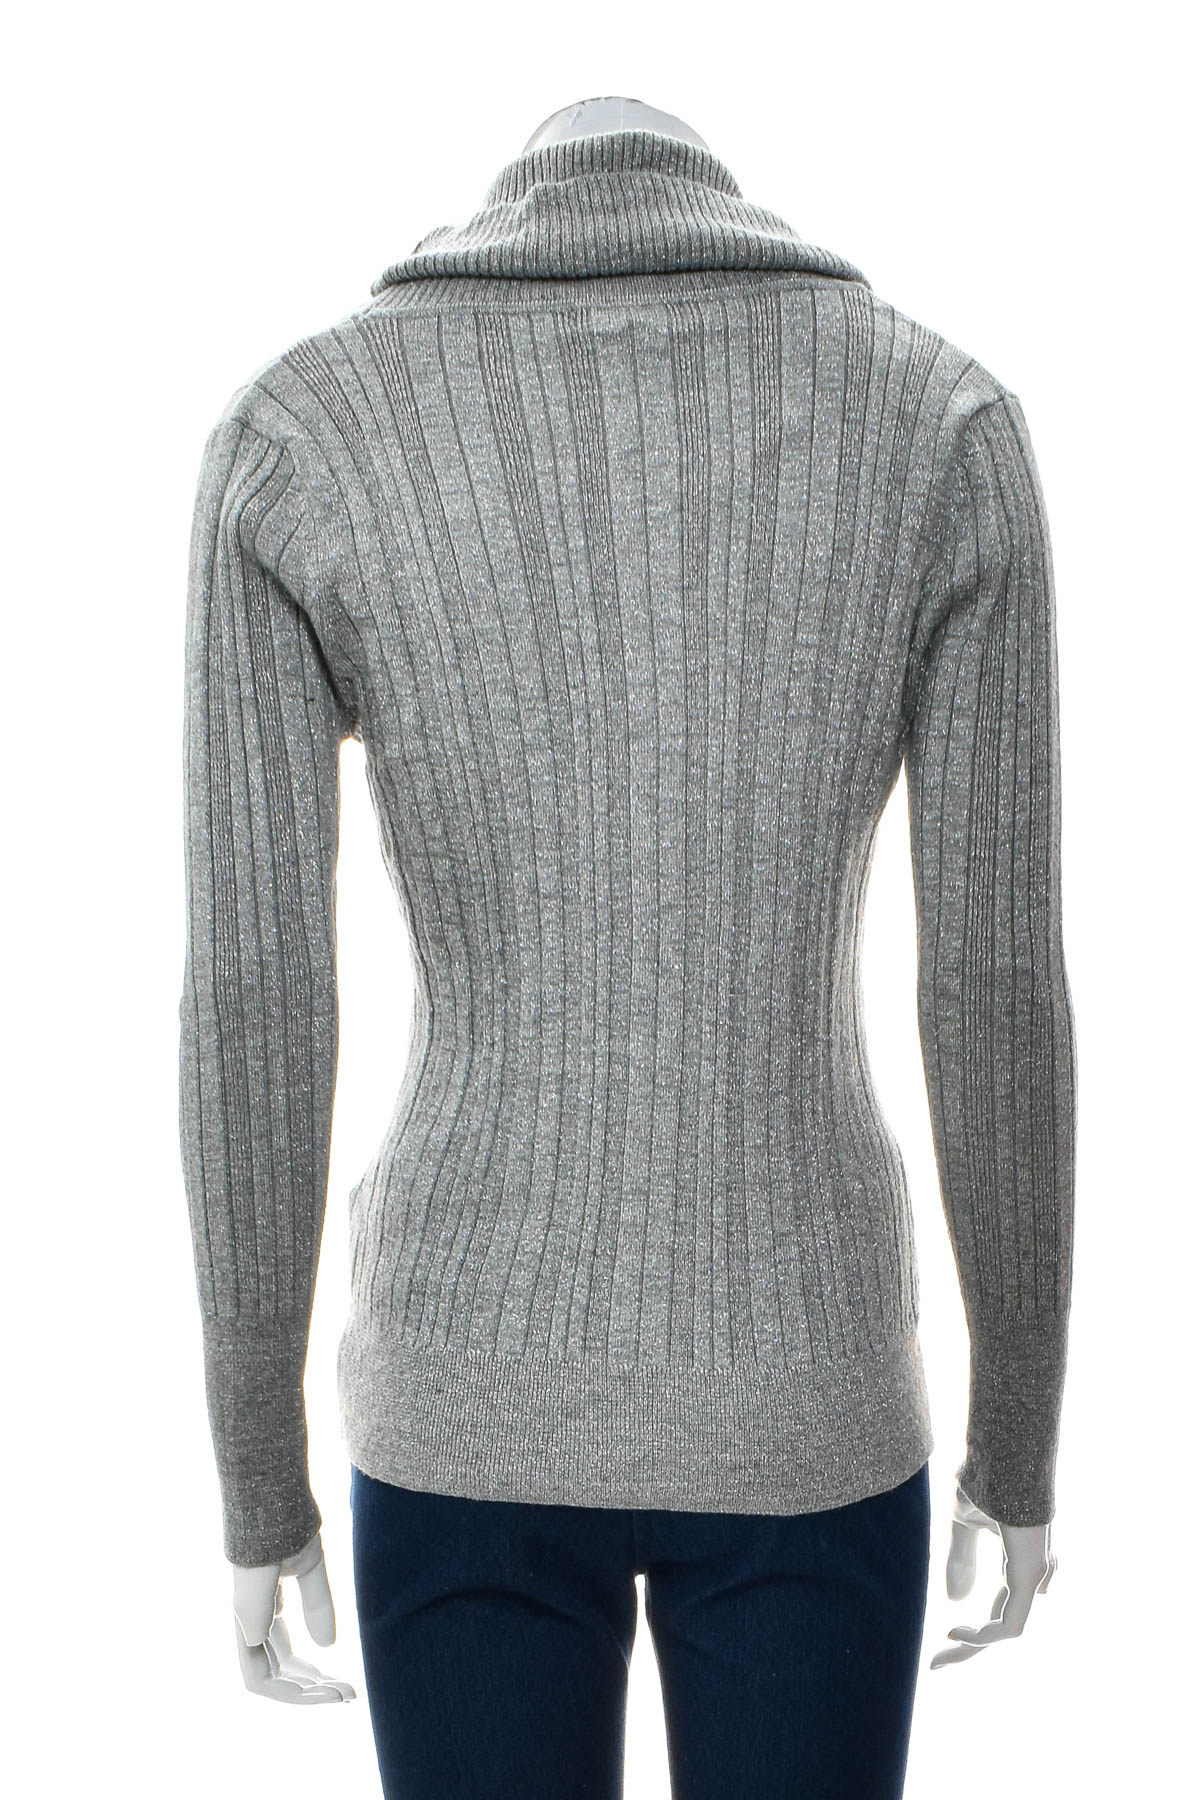 Γυναικείο πουλόβερ - United States Sweaters - 1